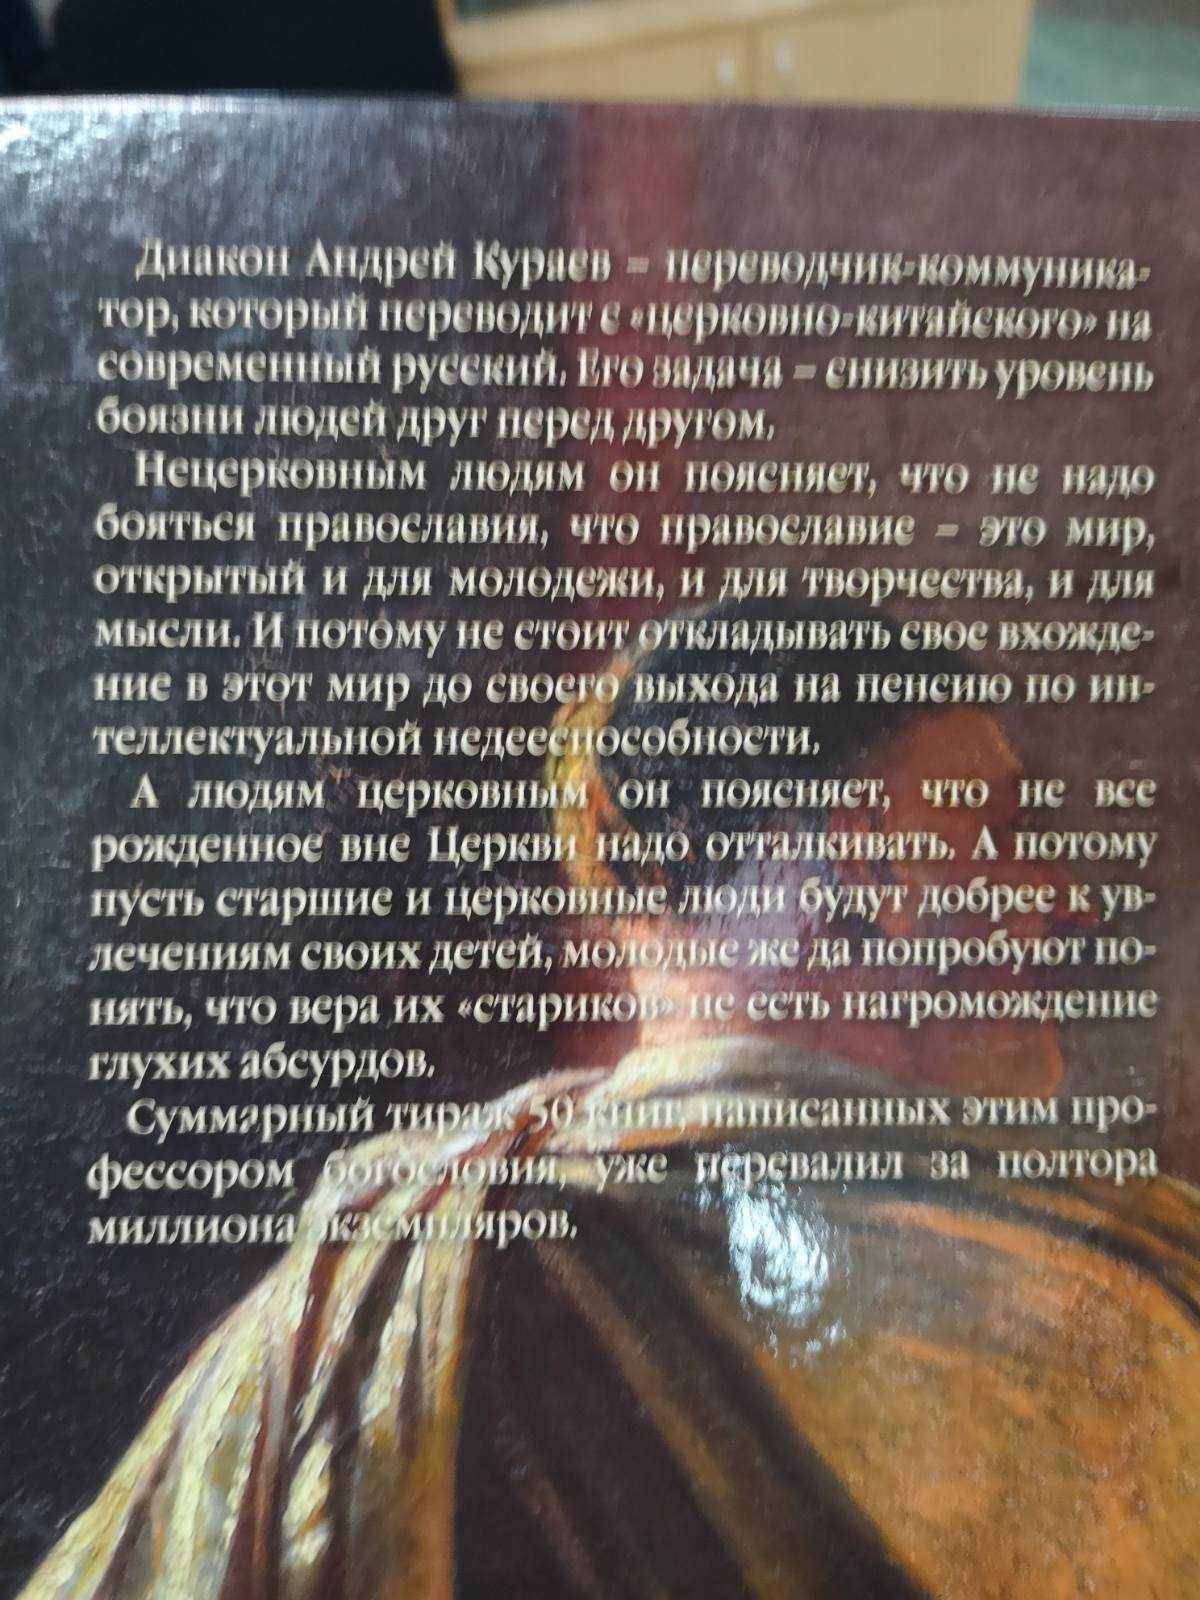 диакон Андрей Кураев "Дары и анафемы. Что принесло христианство